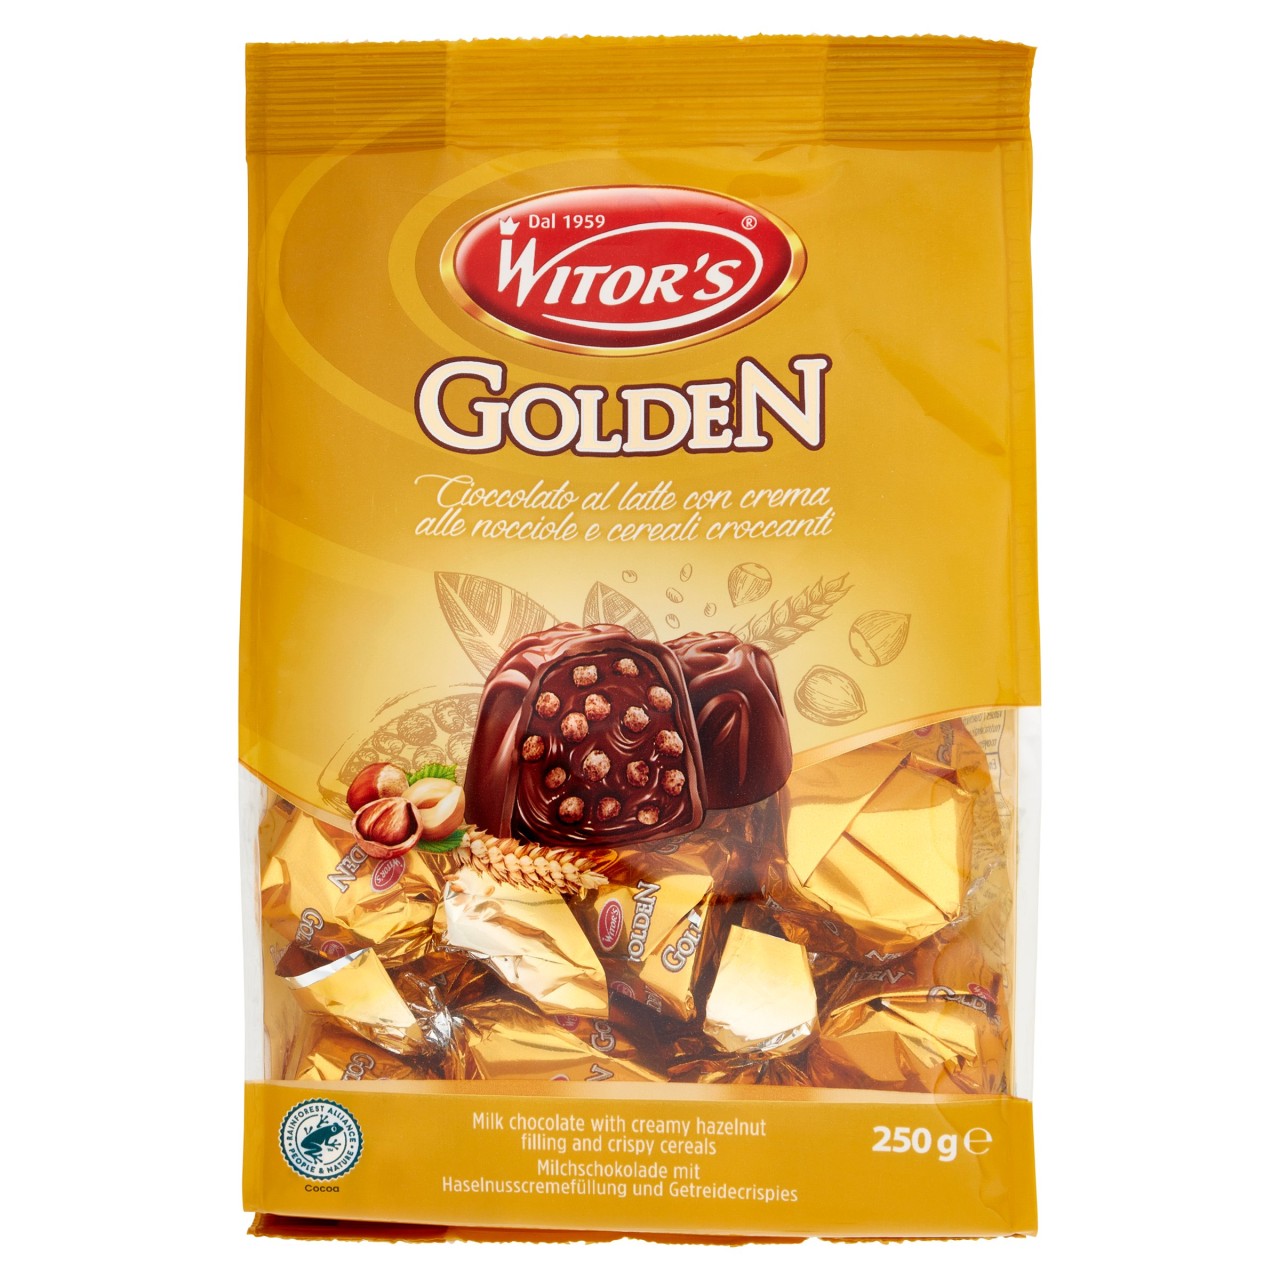 Witor's Golden Cioccolato al latte con crema alle nocciole e cereali croccanti 250 g